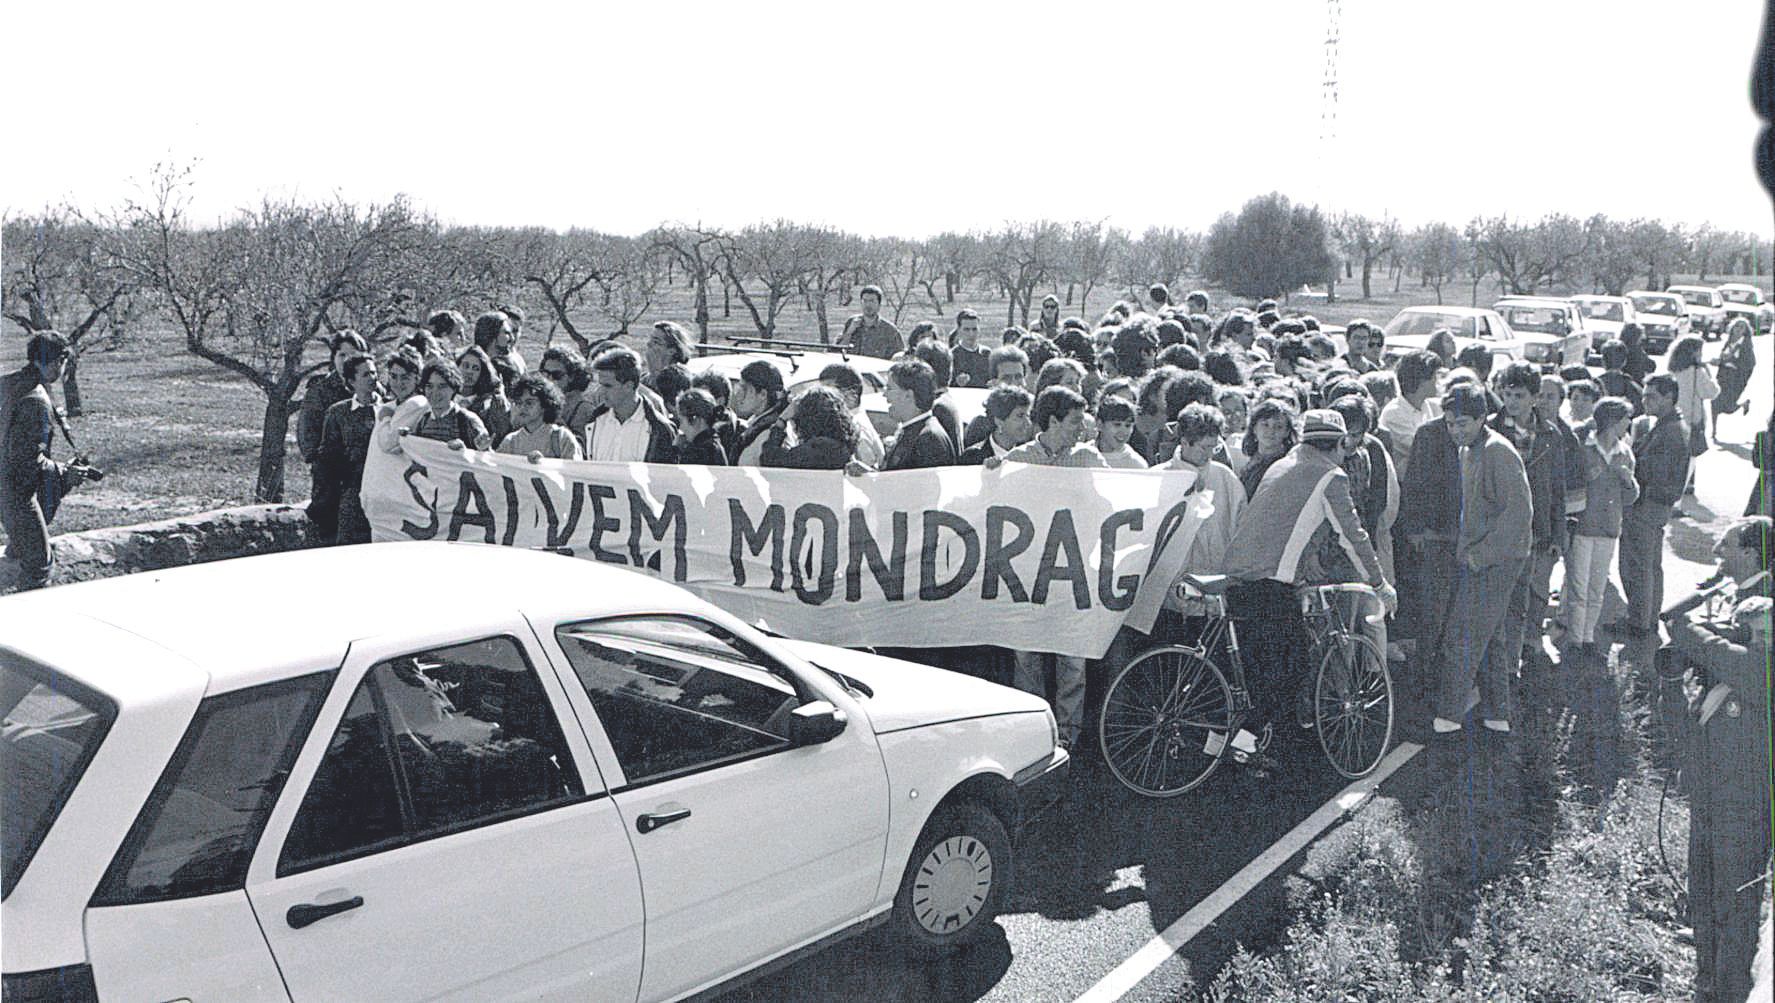 Las protestas a favor de salvar Mondragó cortan la carretera en noviembre de 1989.